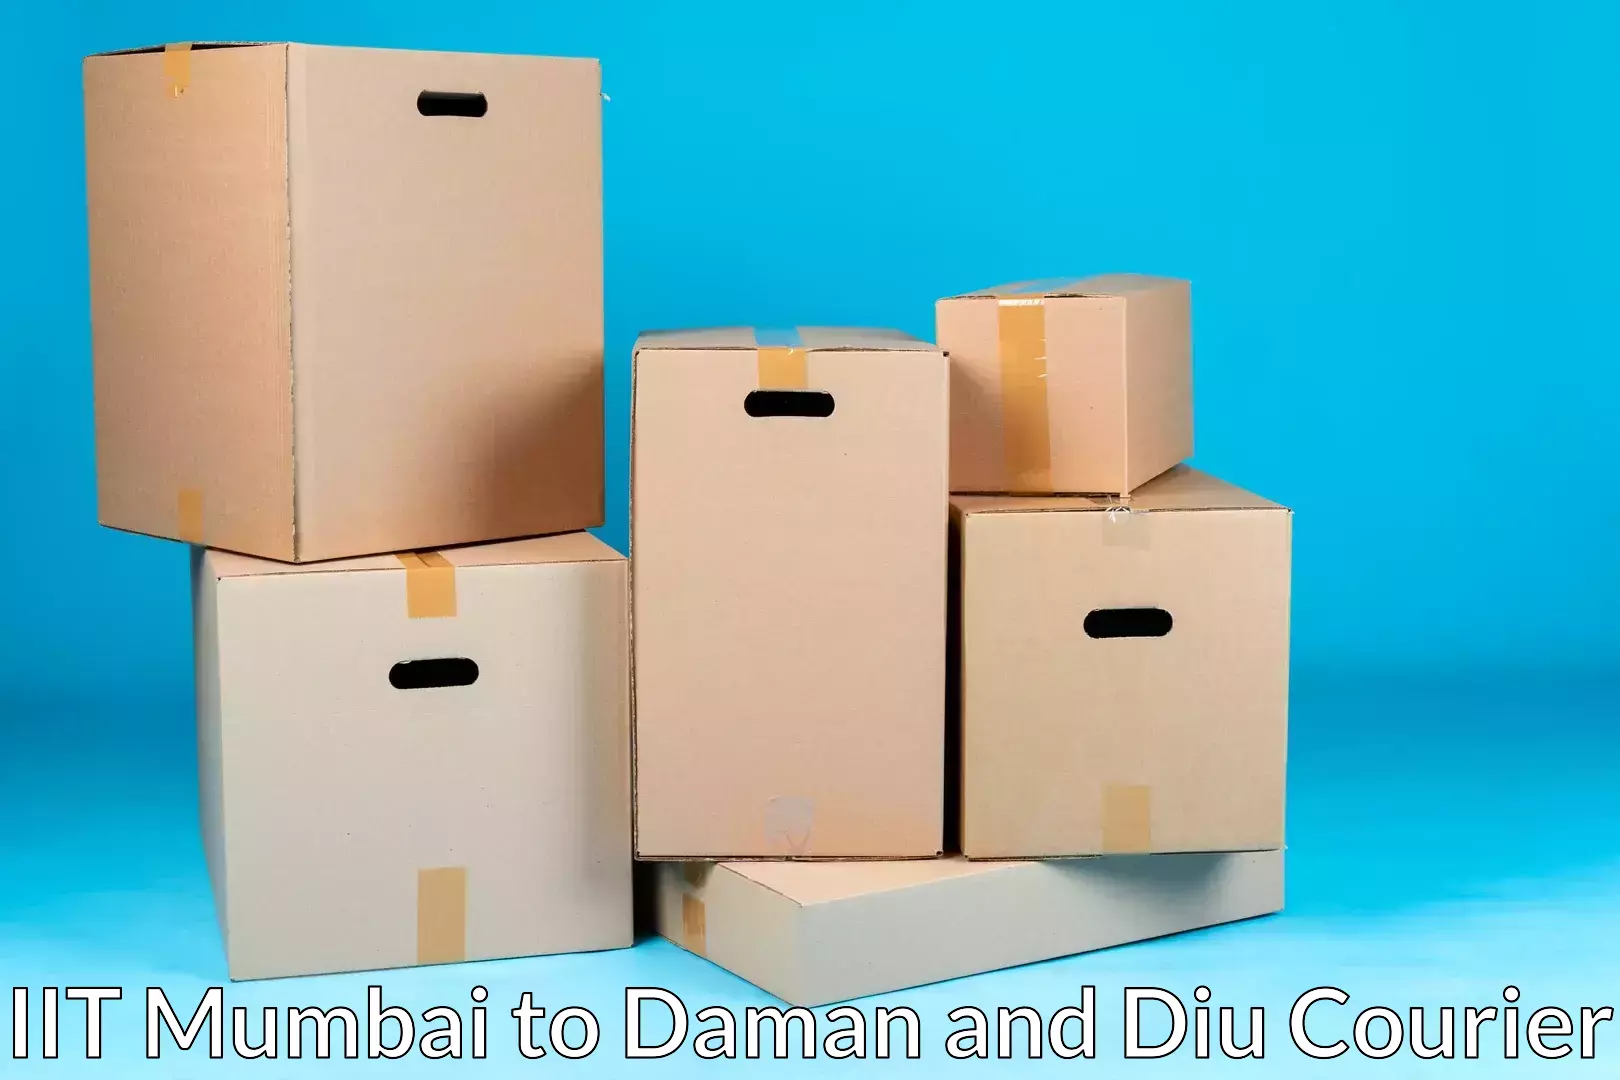 Furniture transport services IIT Mumbai to Daman and Diu